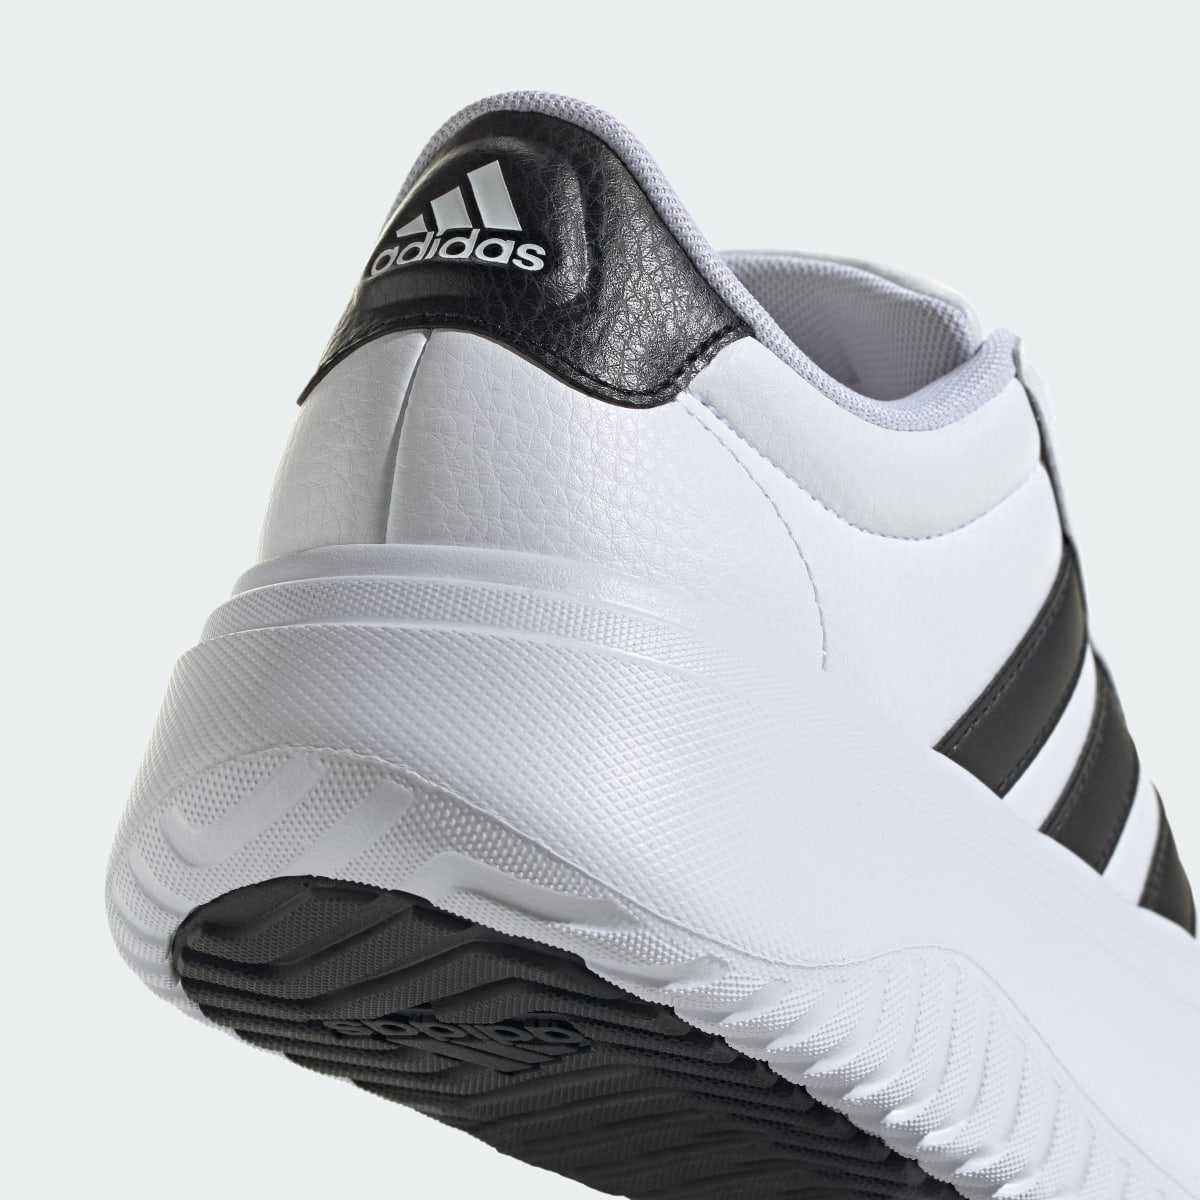 Adidas Grand Court Platform Shoes. 9